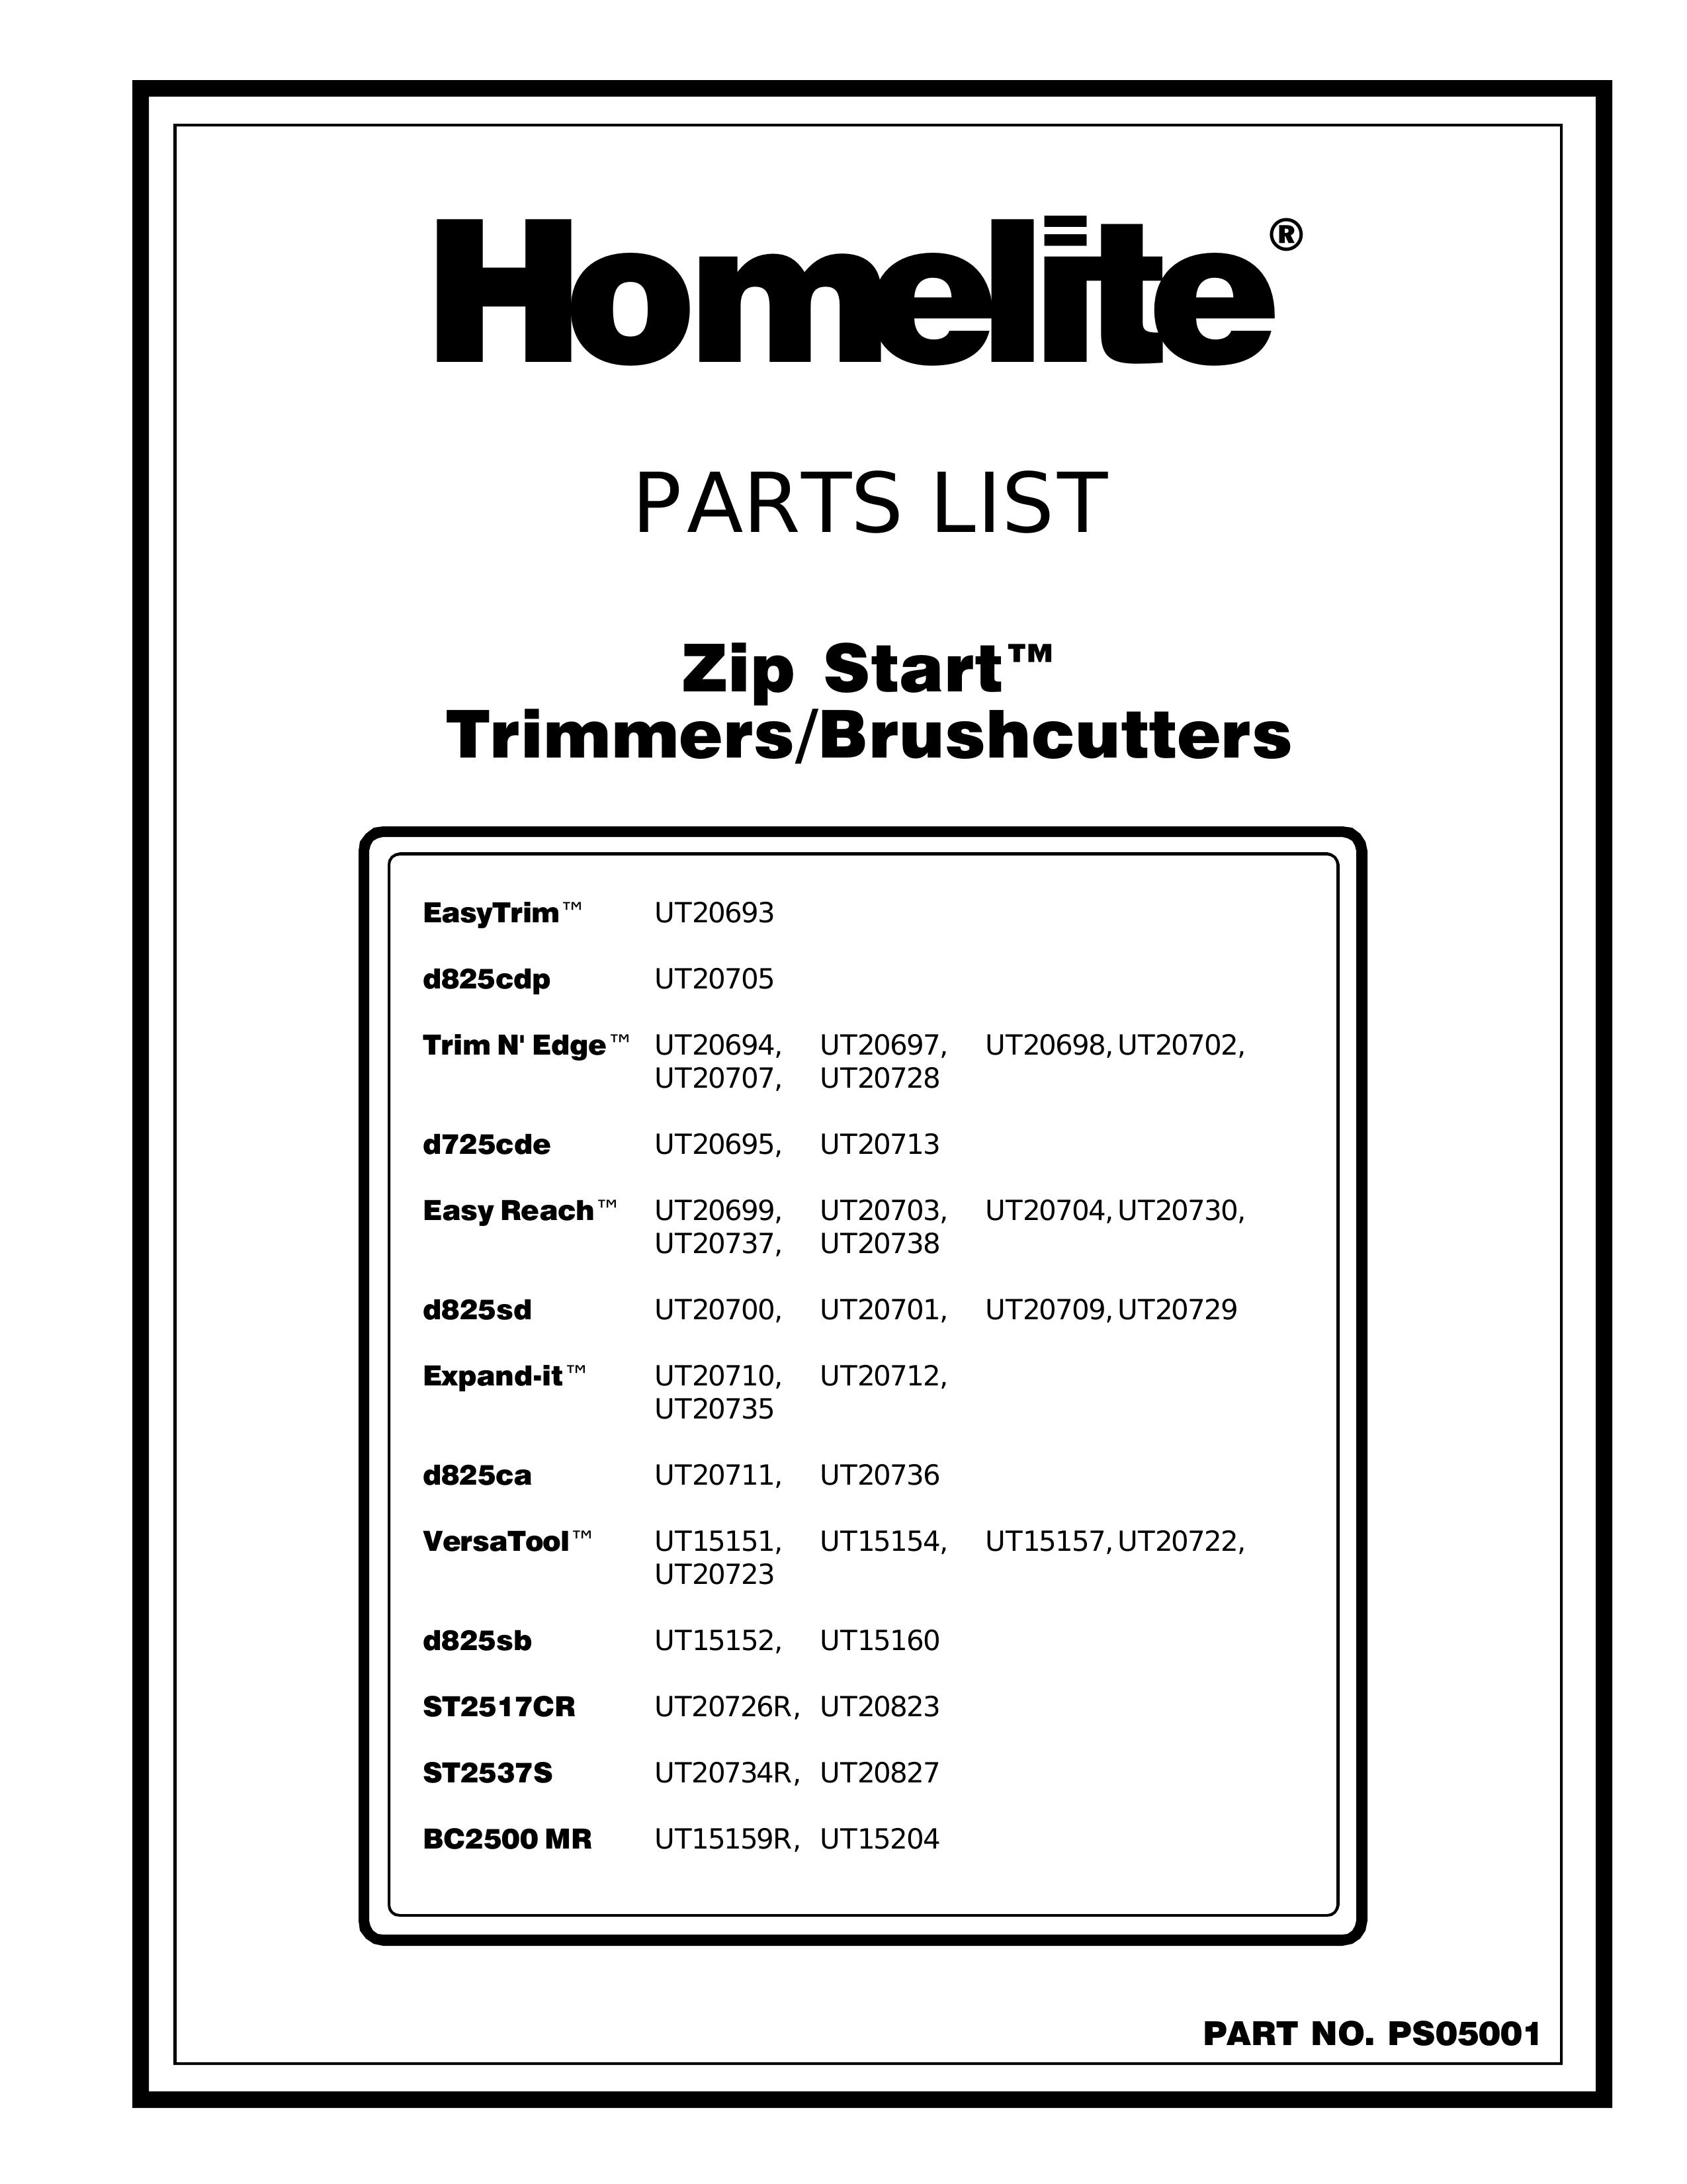 Homelite UT20709 Brush Cutter User Manual